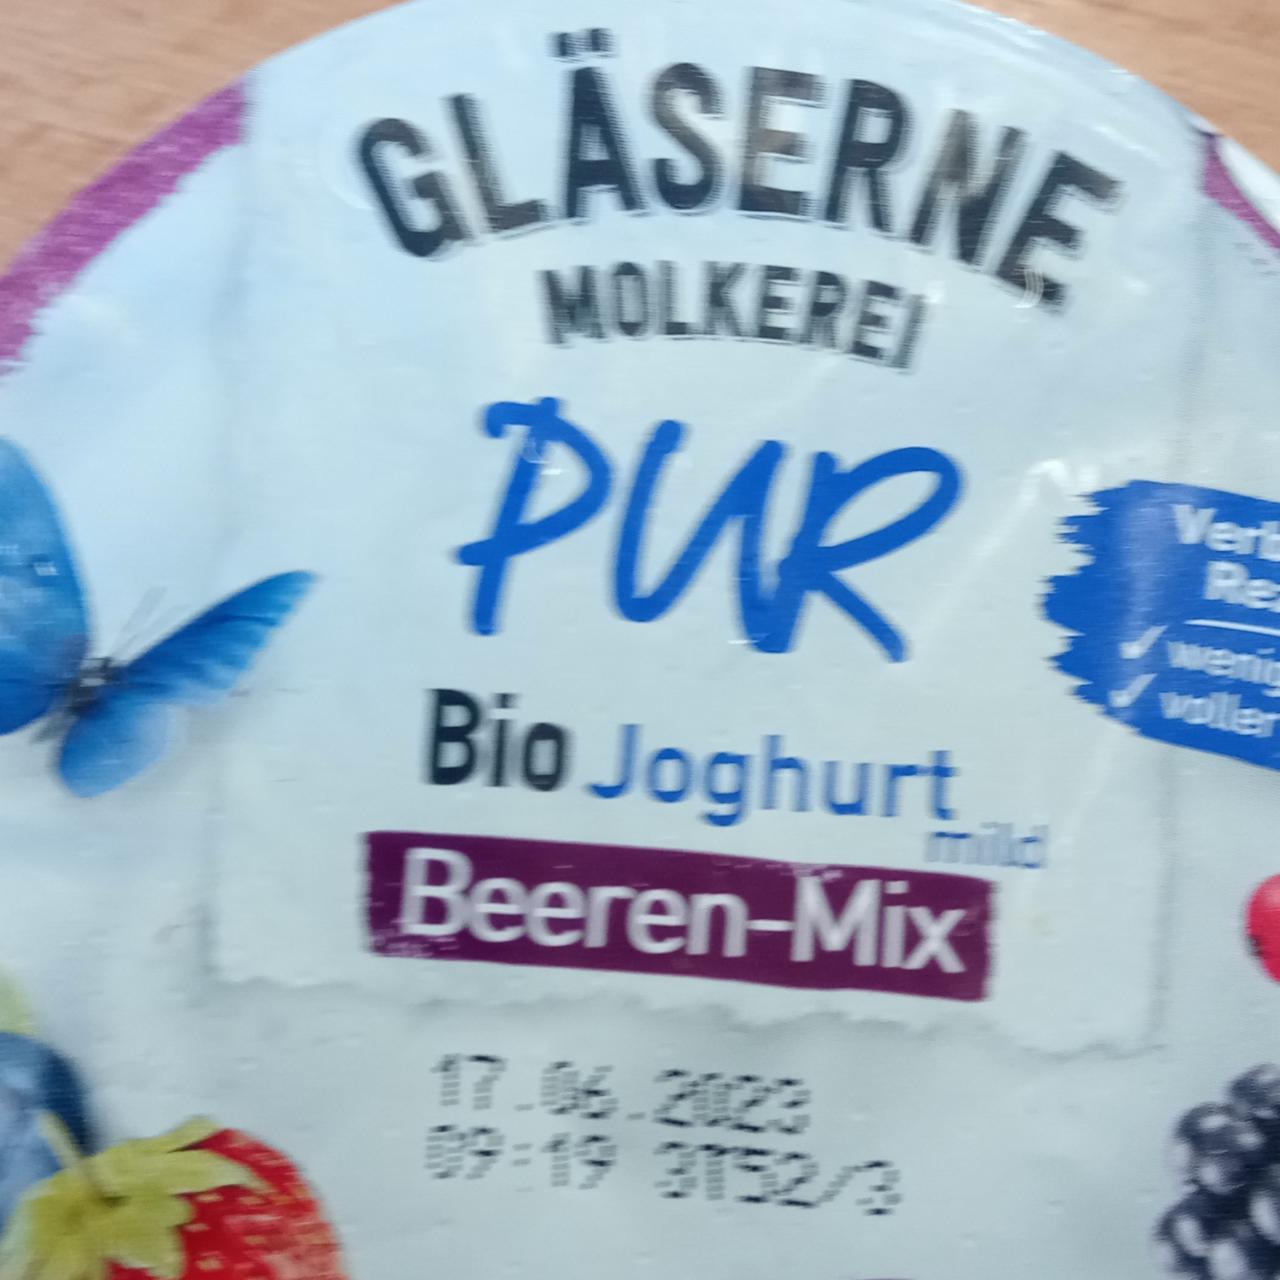 Fotografie - Pur Bio Joghurt Beeren-Mix Gläserne Molkerei